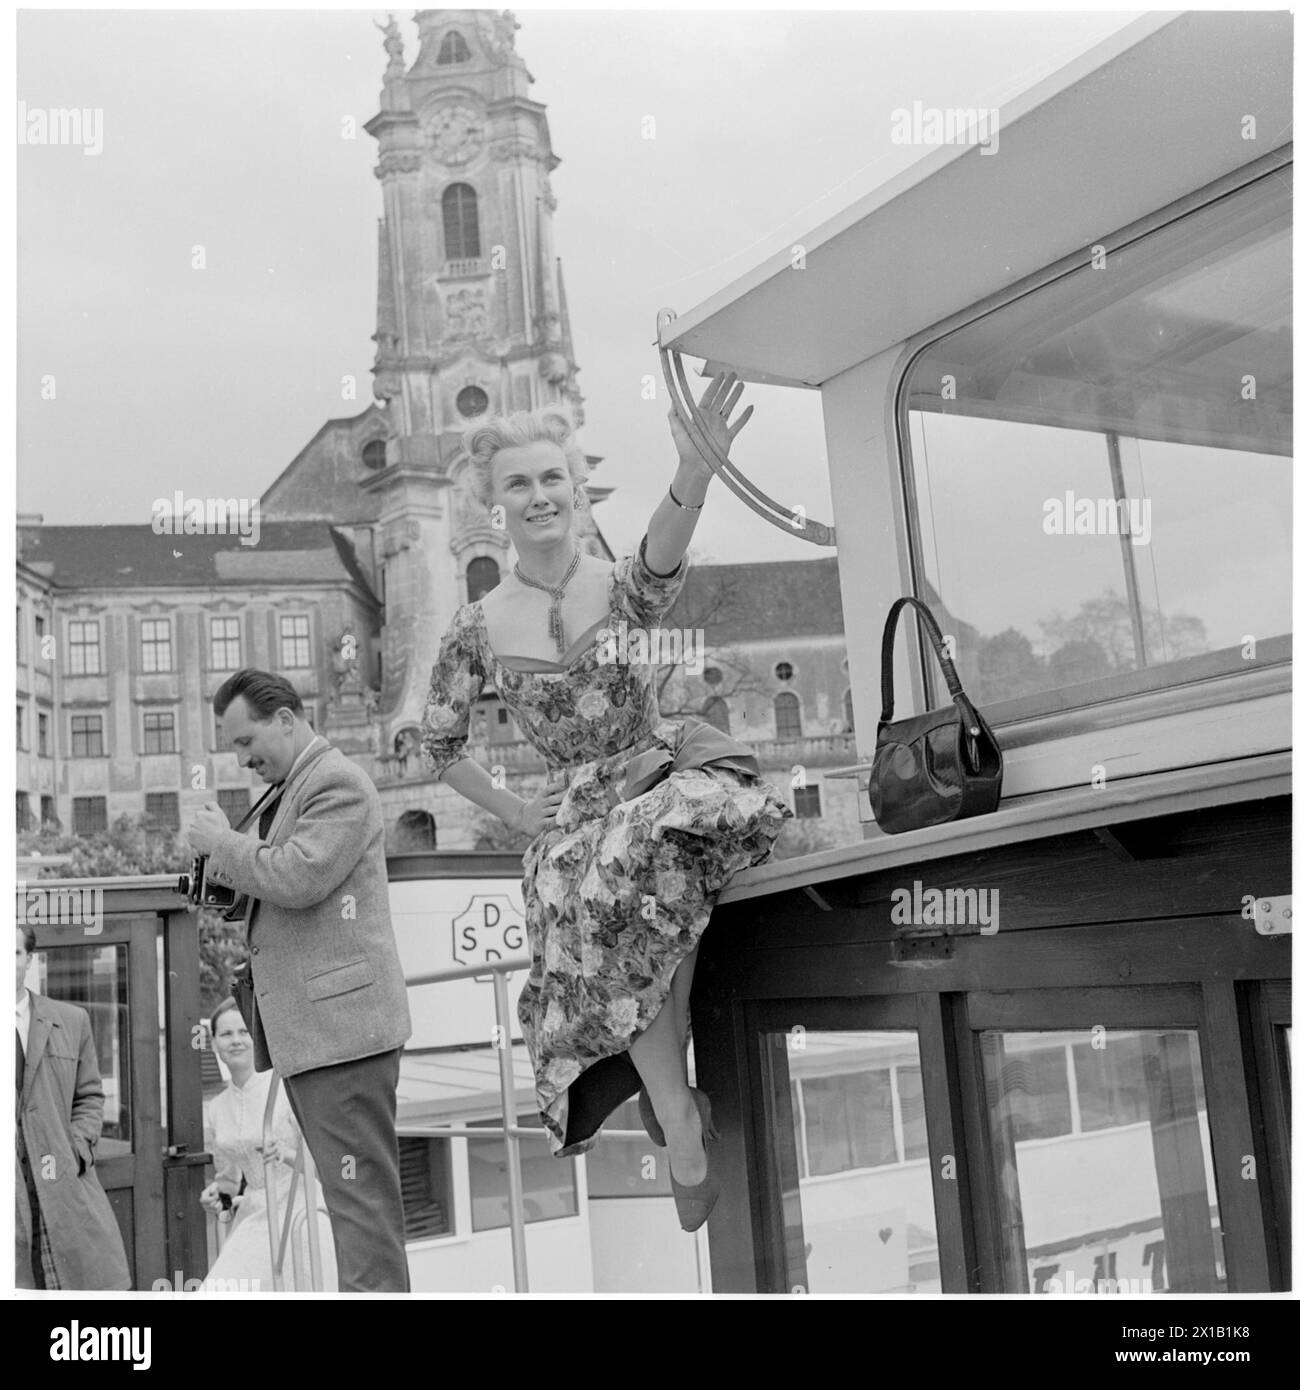 Tournage du film 'dort in der Wachau' à Duernstein, scène photo sur un navire de la DDSG, un clocher, femme assise au navire., 1957 - 19570101 PD2176 - Rechteinfo : droits gérés (RM) Banque D'Images